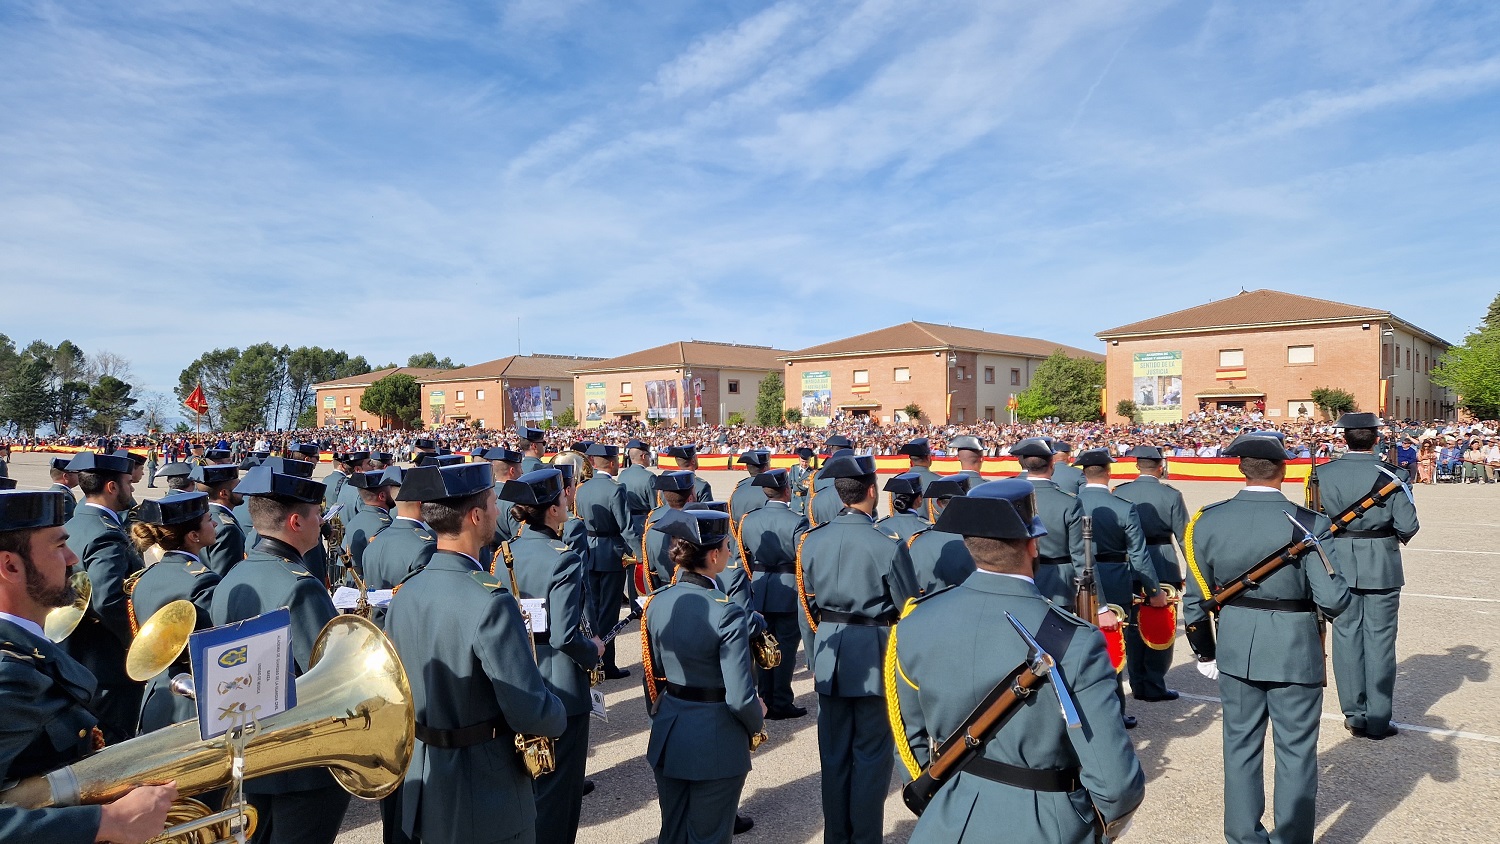 Grande-Marlaska pide a la Guardia Civil que siga preservando “el modelo de convivencia diversa y plural que tanto enriquece a España”